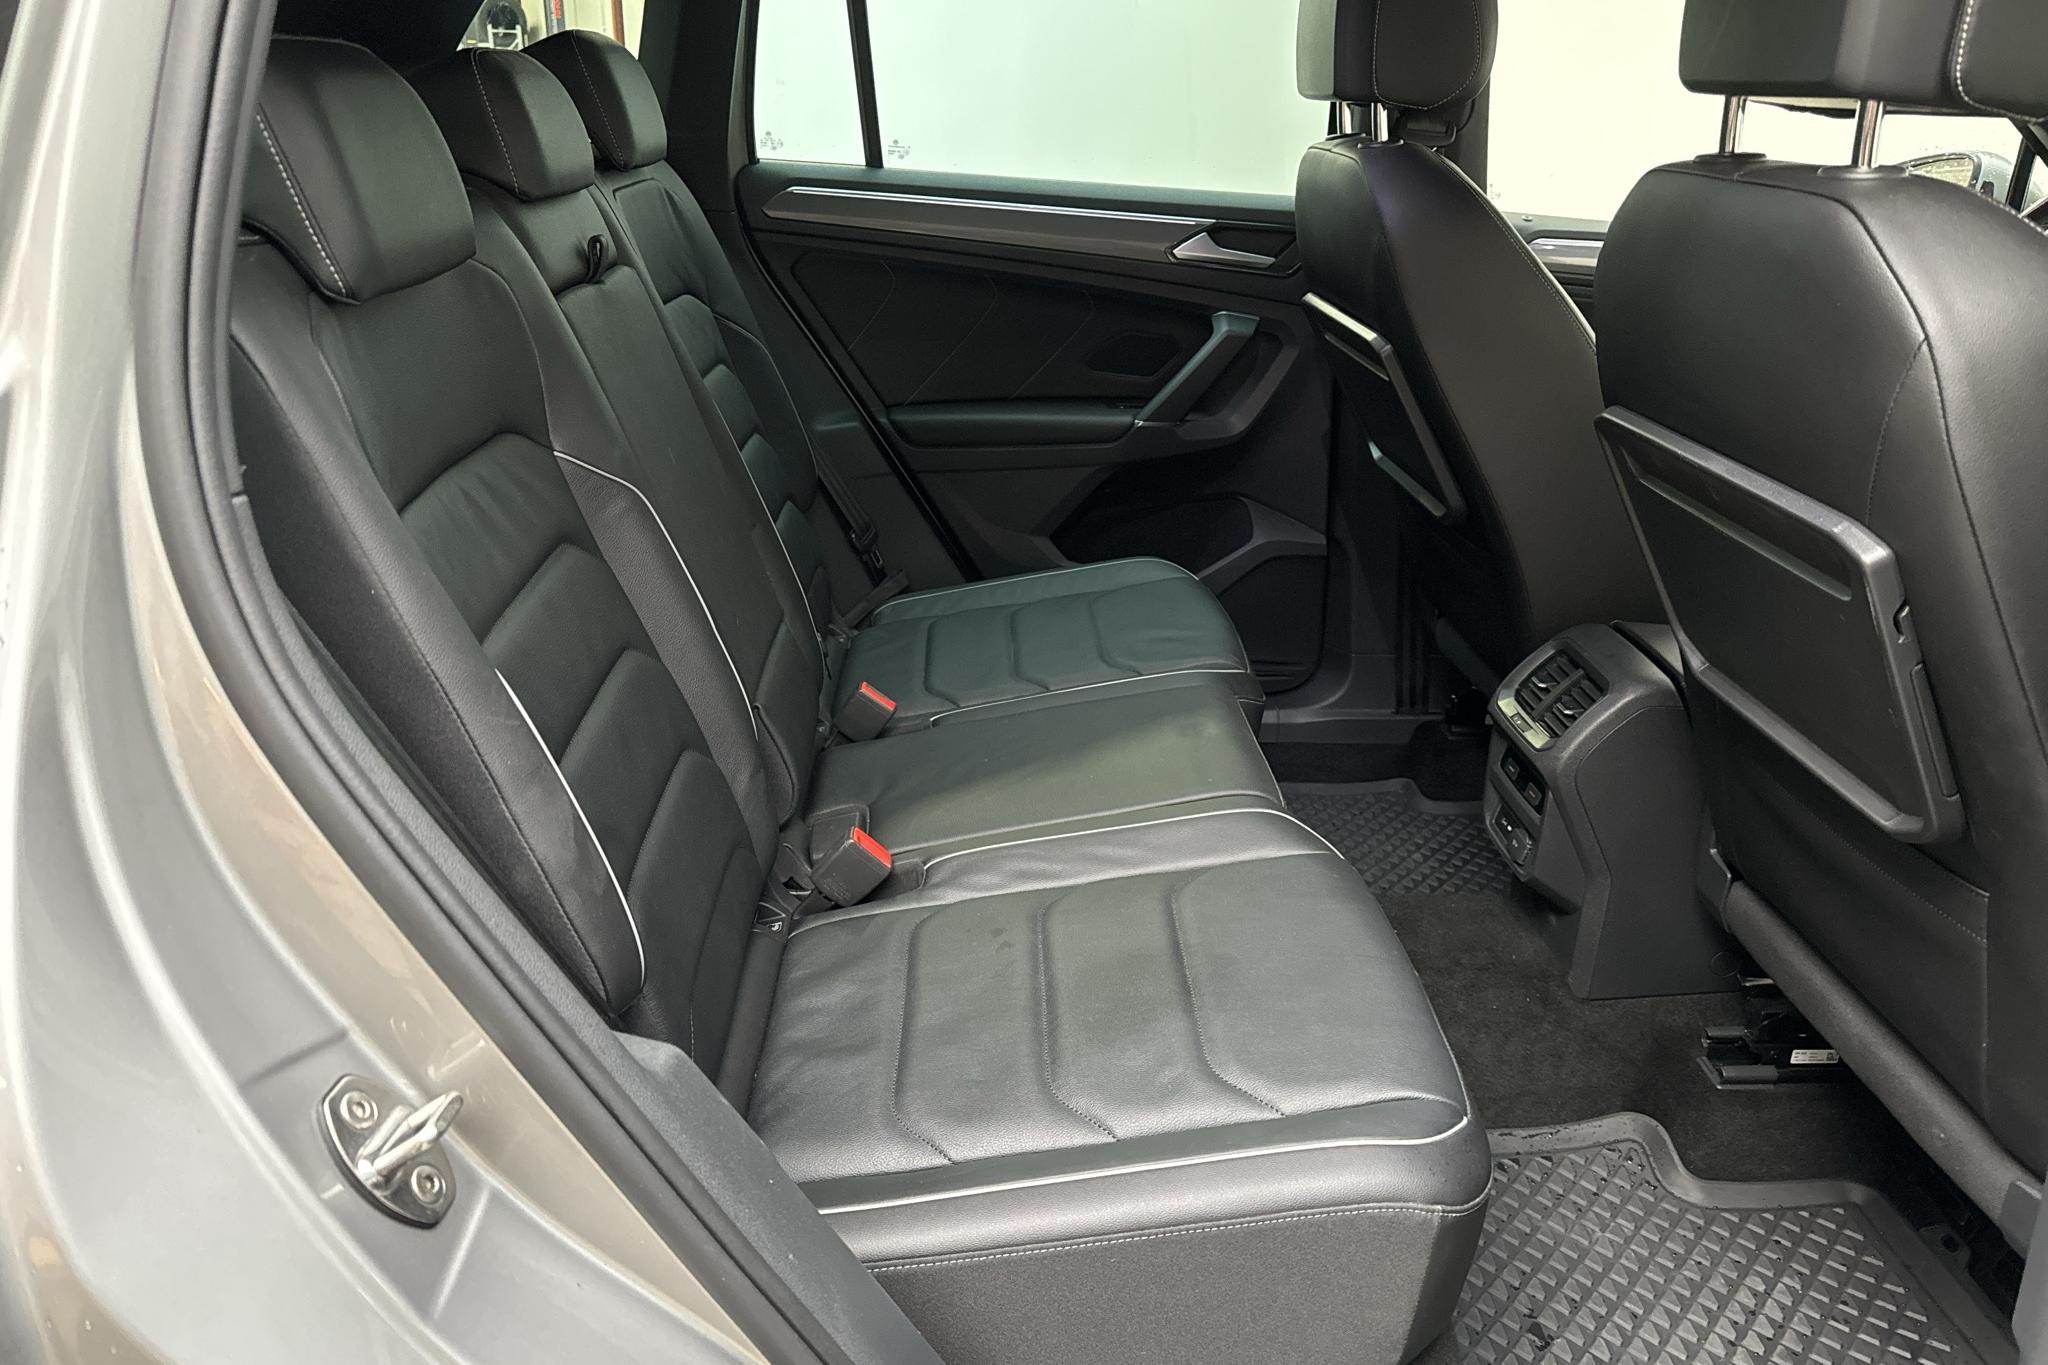 VW Tiguan 2.0 TDI 4MOTION (240hk) - 137 360 km - Automatic - silver - 2018